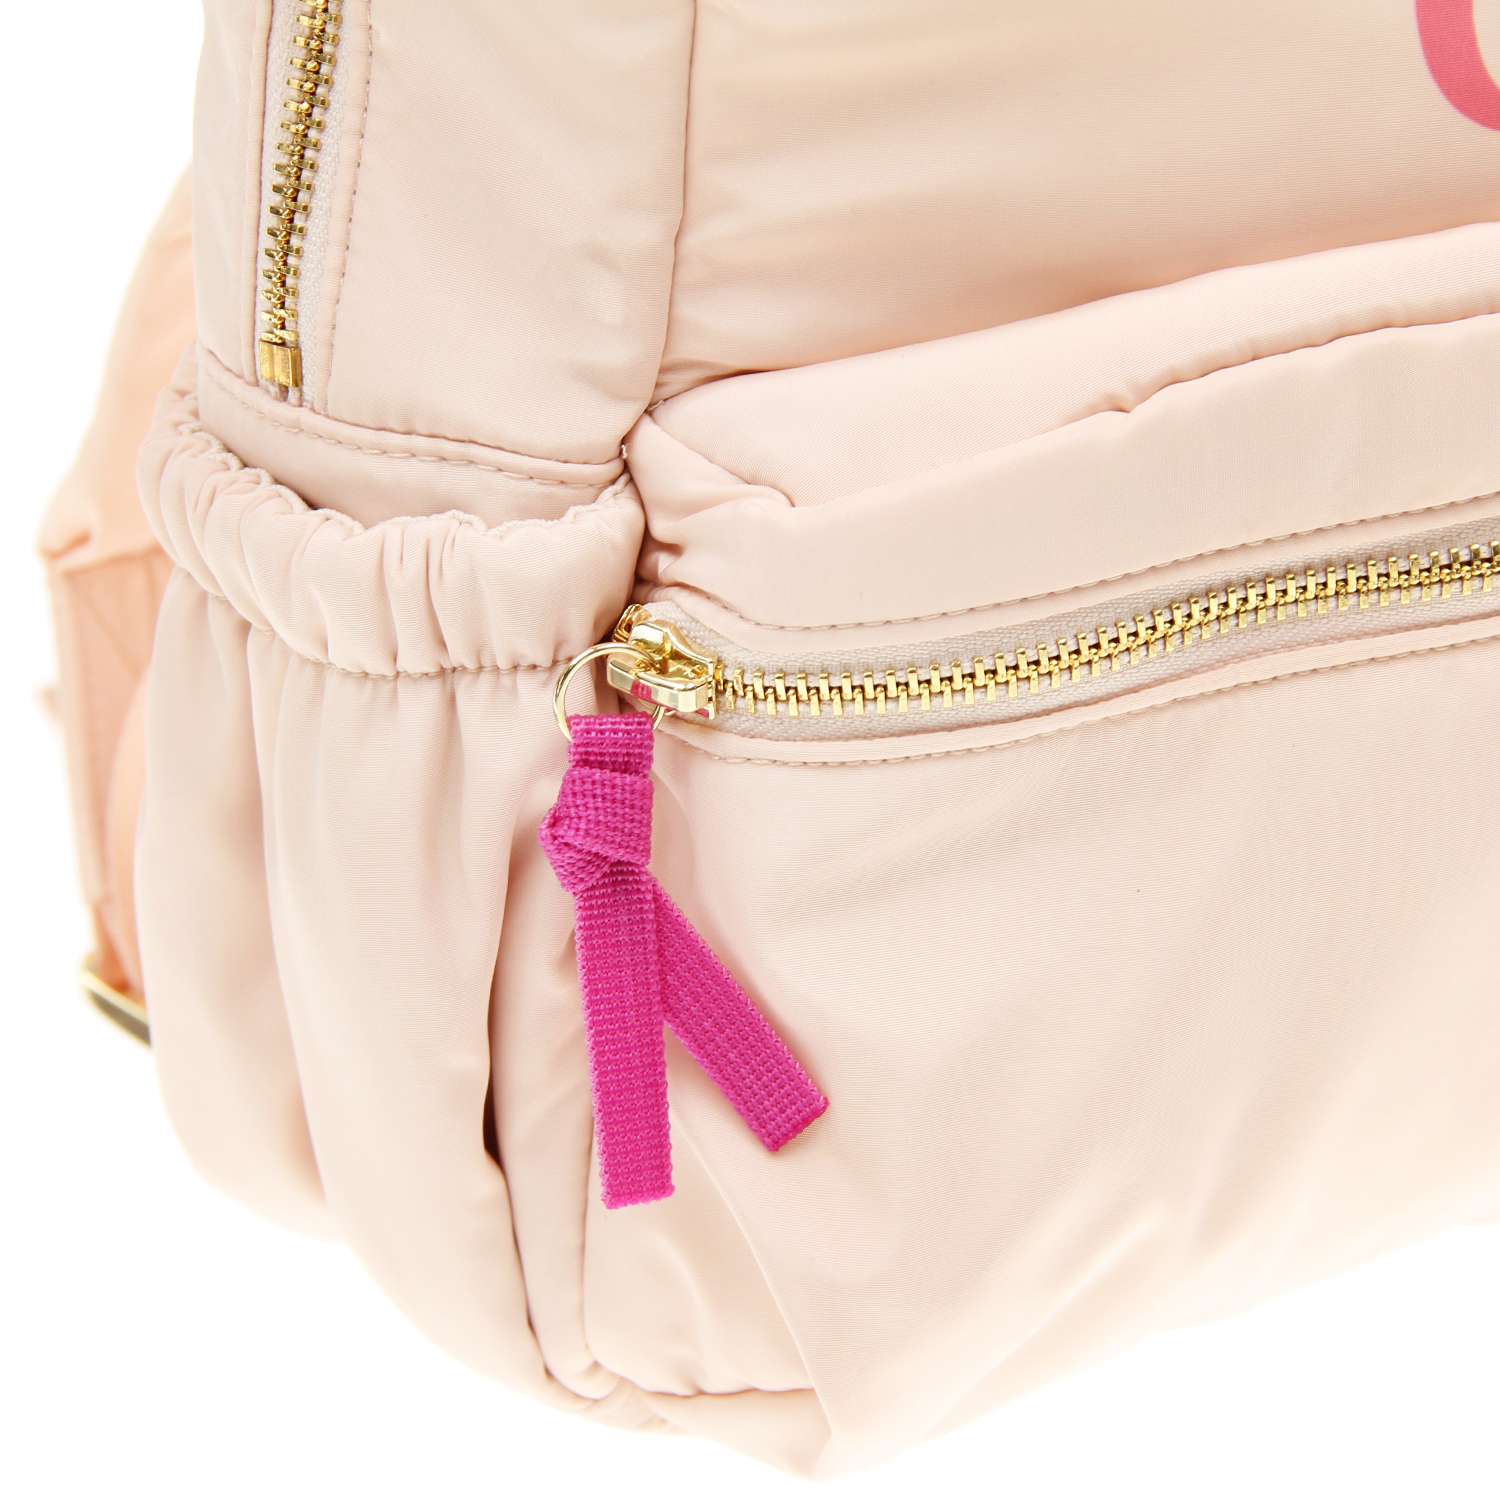 Рюкзак с логотипом, 34x27x8 см Chloe детский, размер unica, цвет мультиколор - фото 6